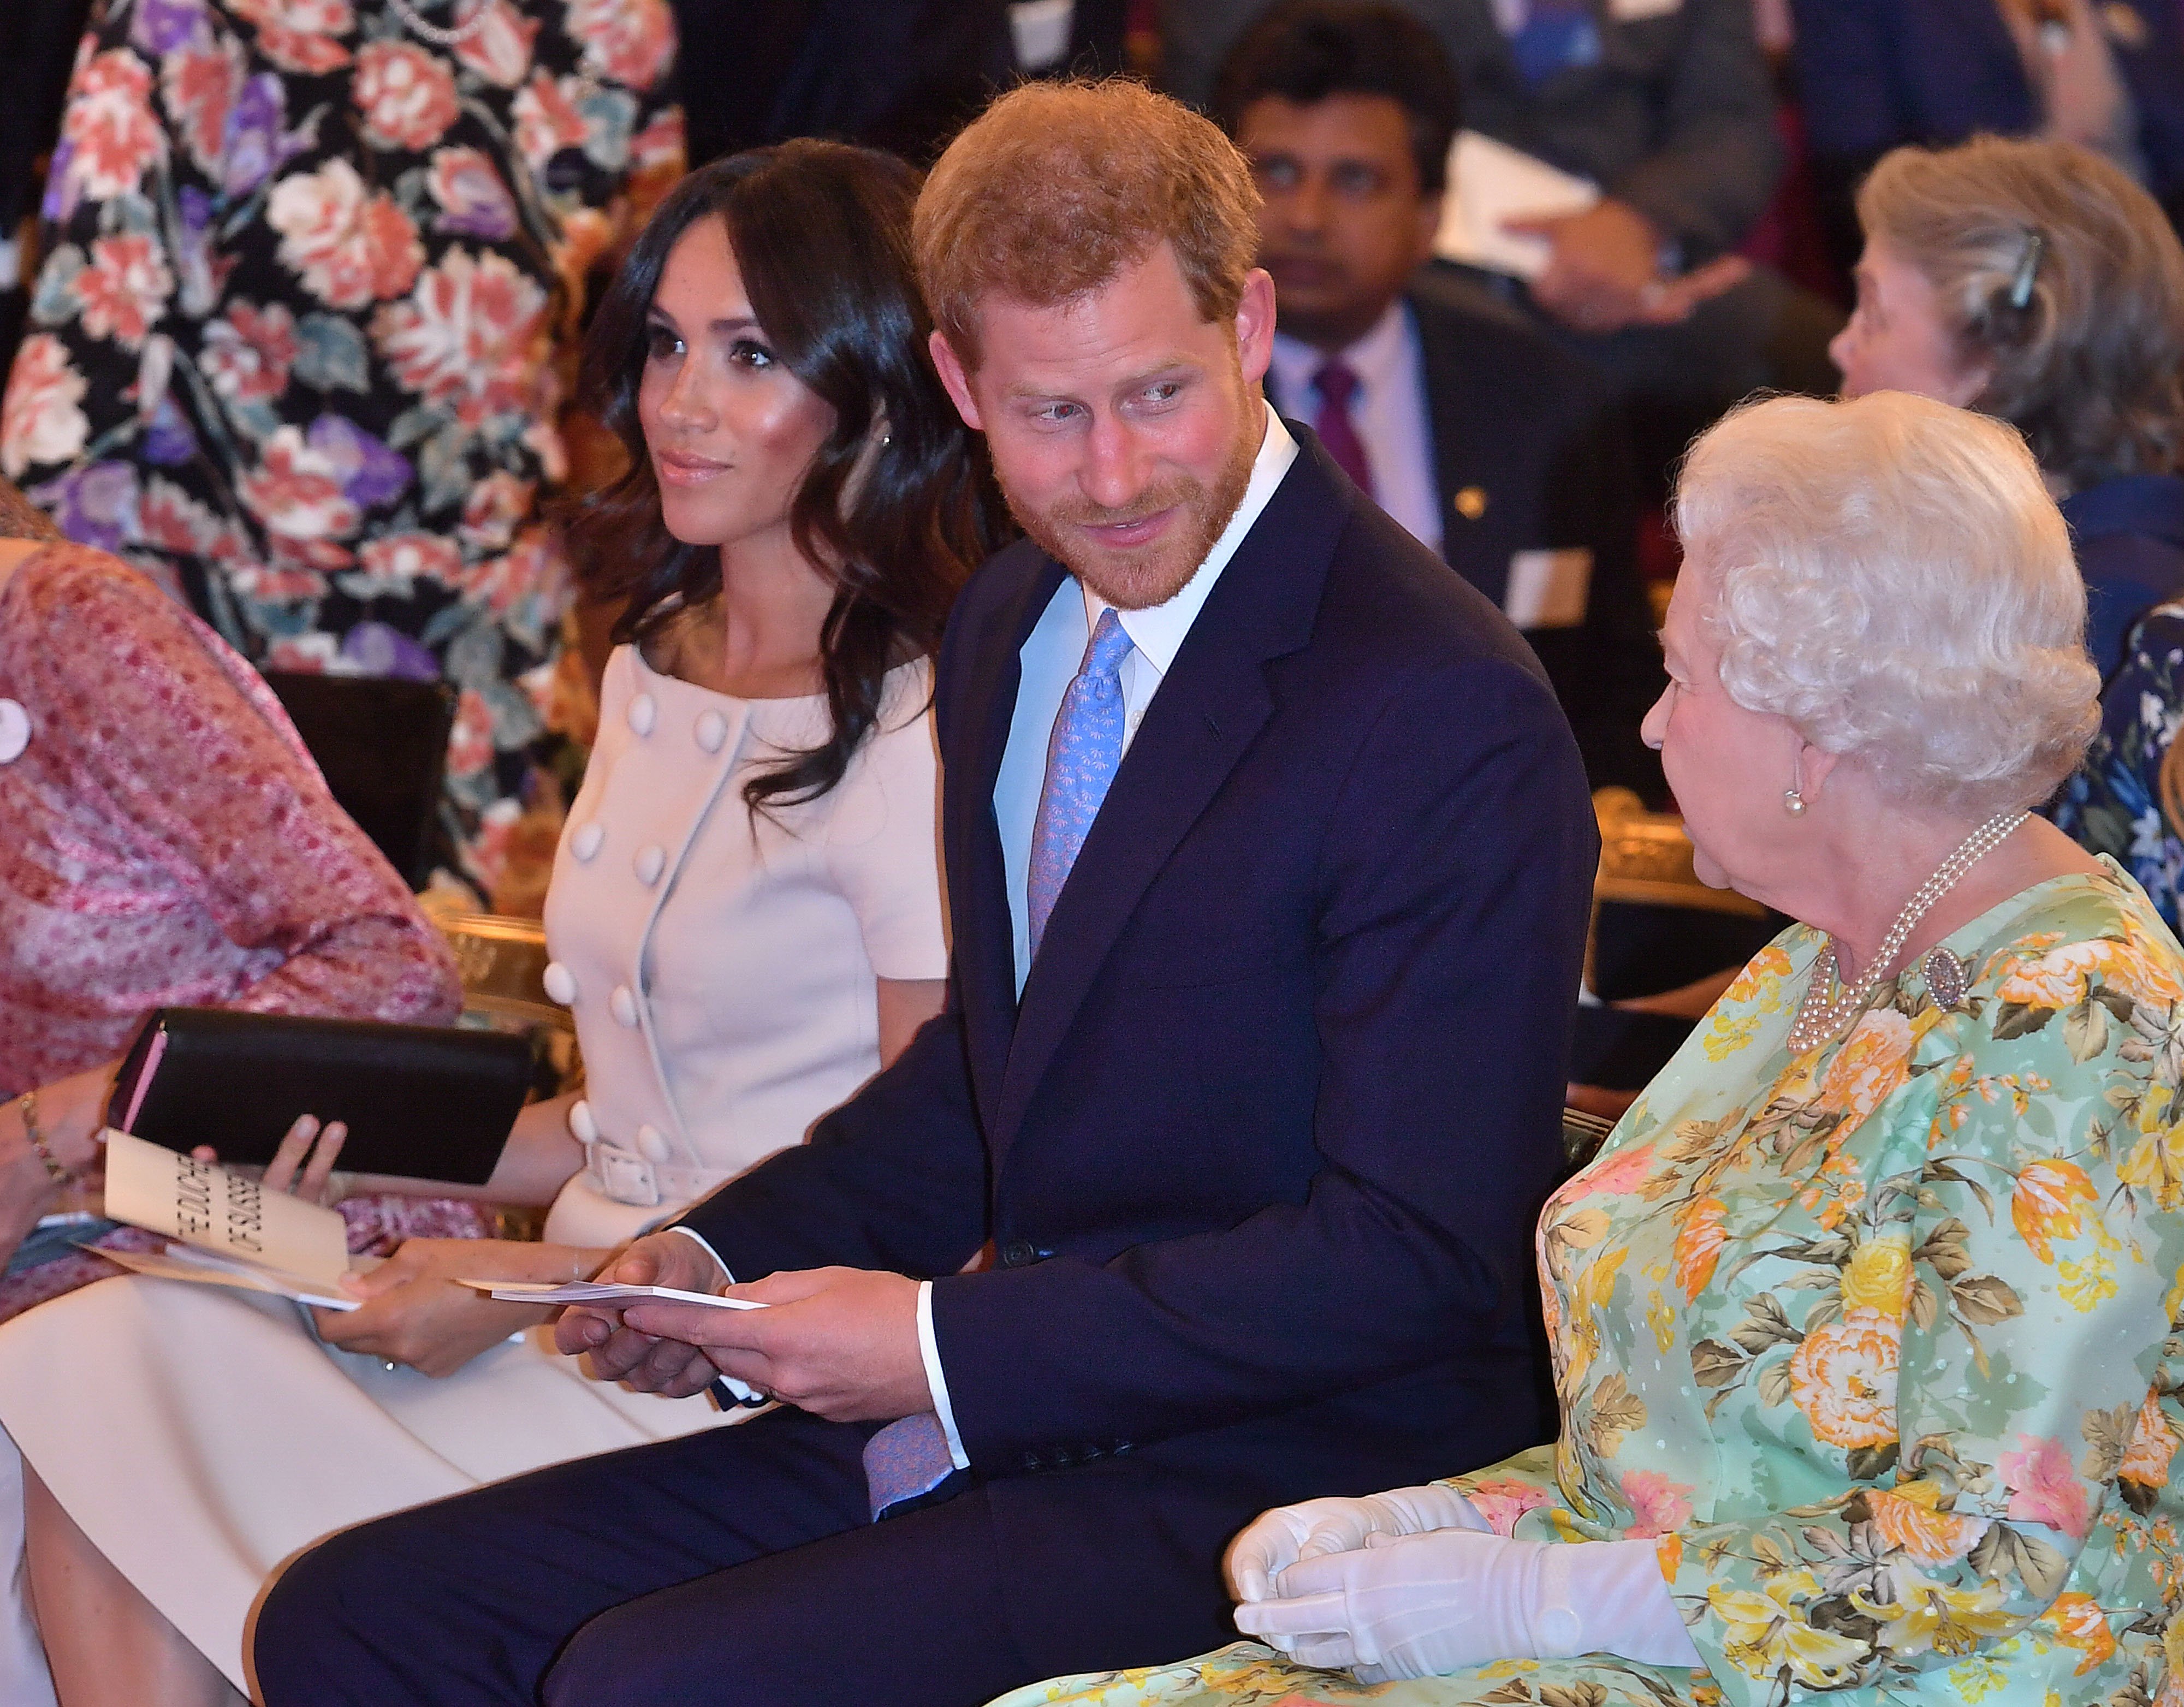 Königin Elizabeth II. mit Prinz Harry, Herzog von Sussex, und Meghan, Herzogin von Sussex, bei der Verleihung der Young Leaders Awards der Königin im Buckingham Palast am 26. Juni 2018 in London, England | Quelle: Getty Images